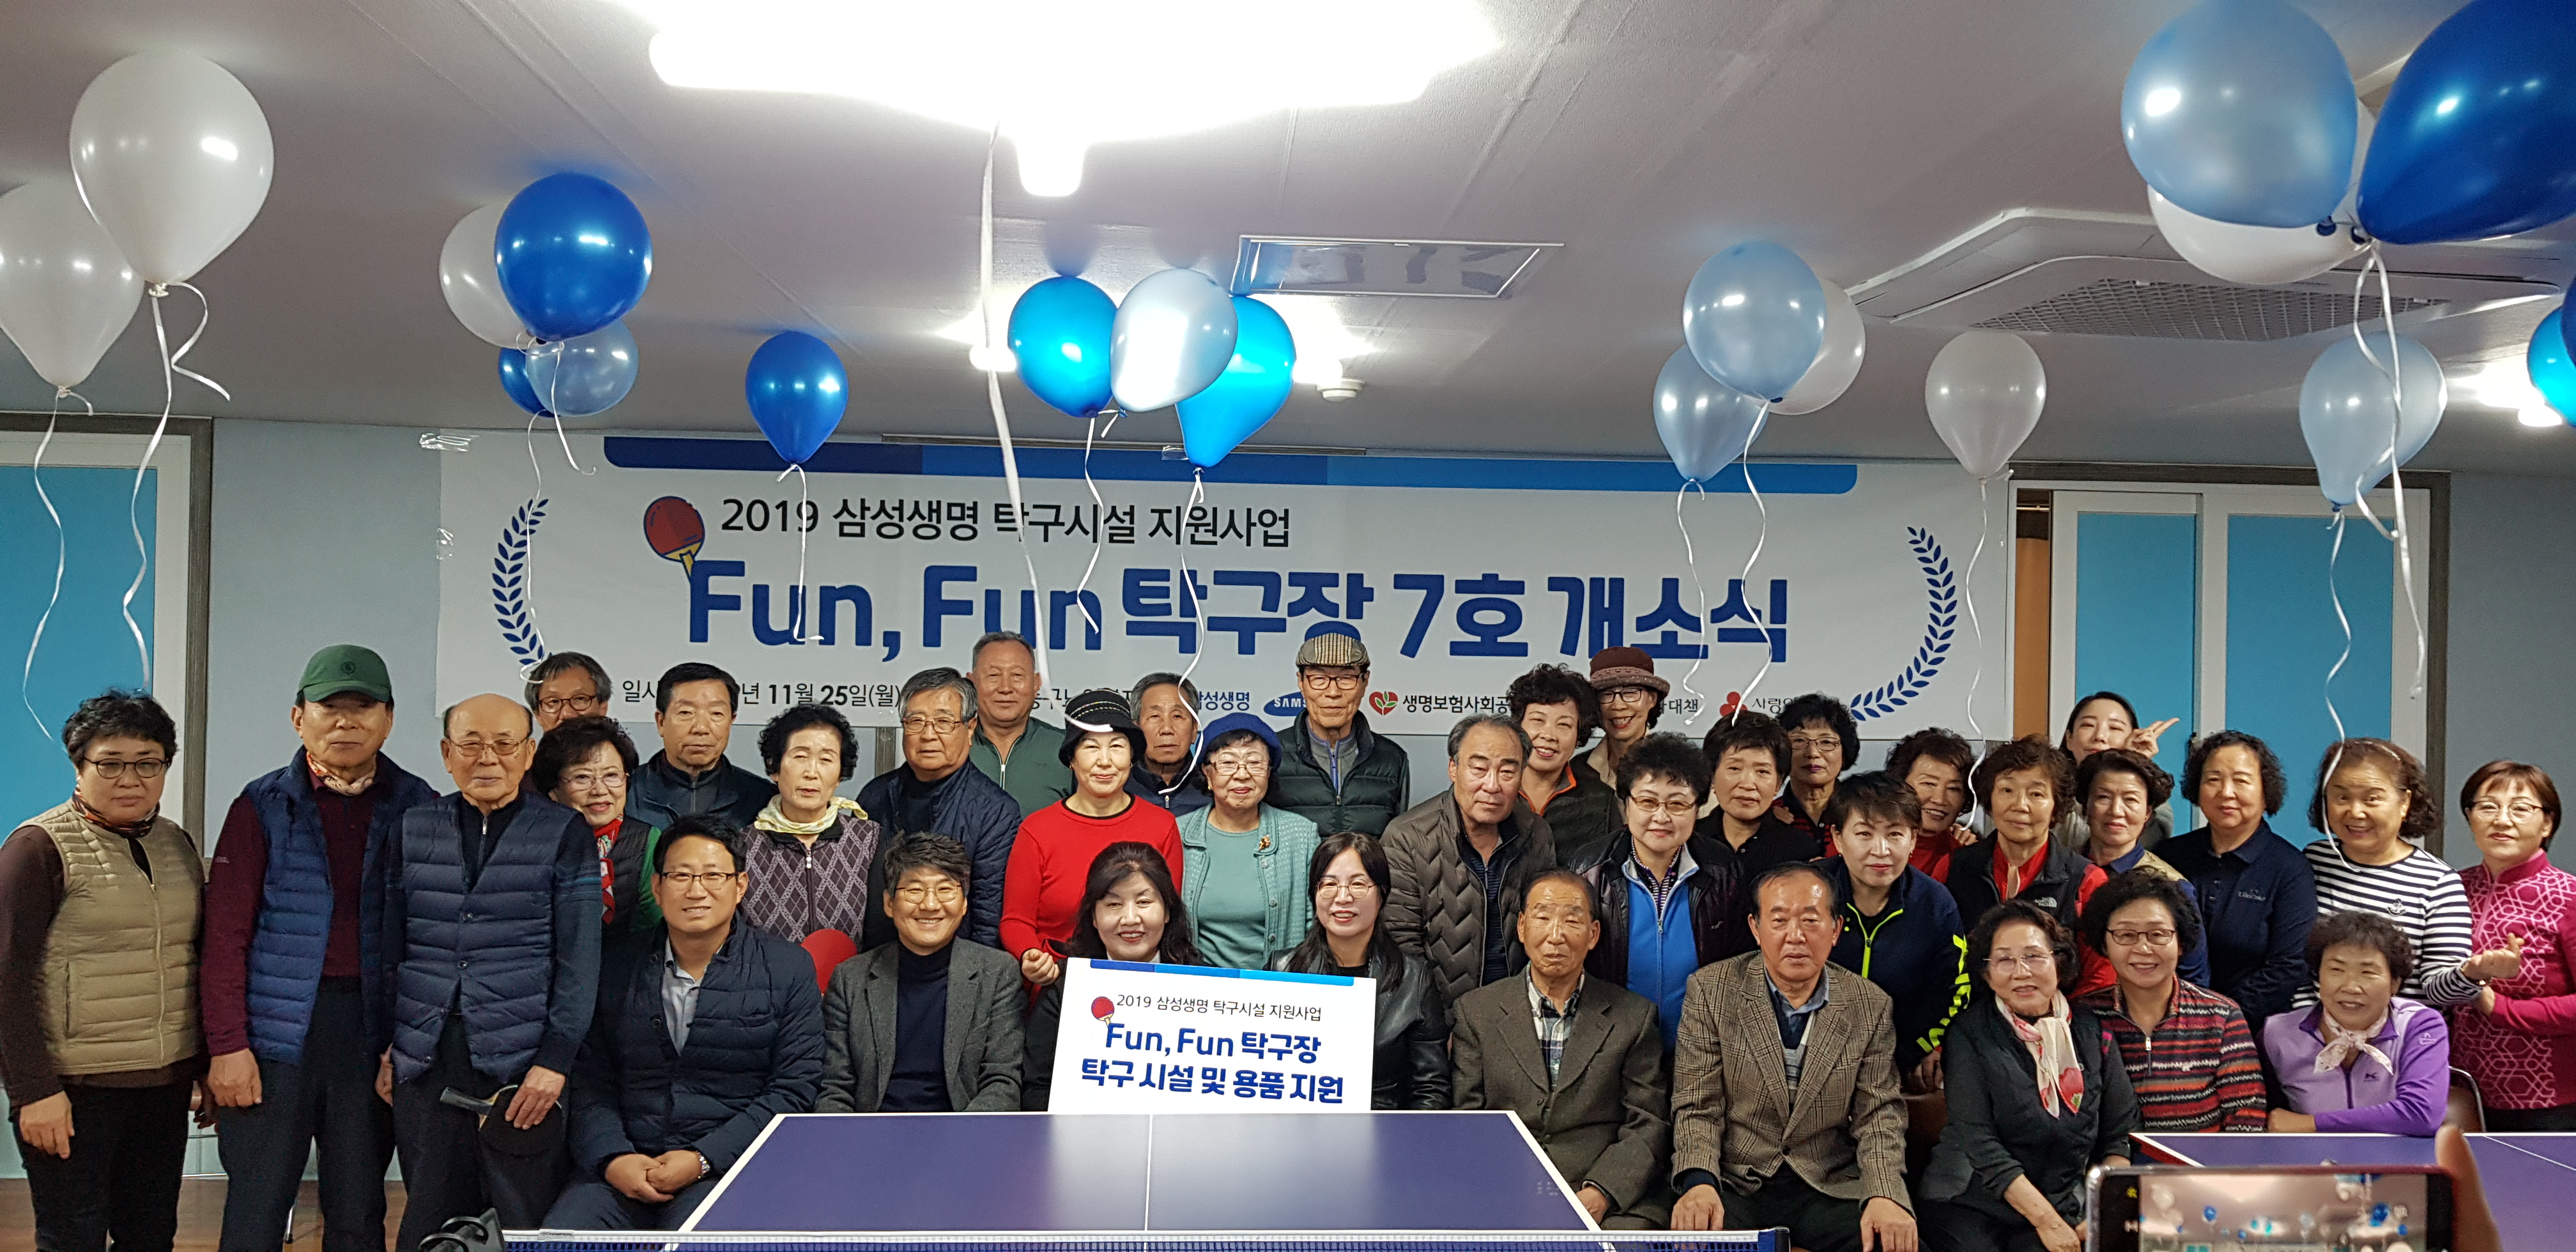 2019 삼성생명 탁구시설 지원사업 개소식 관련사진